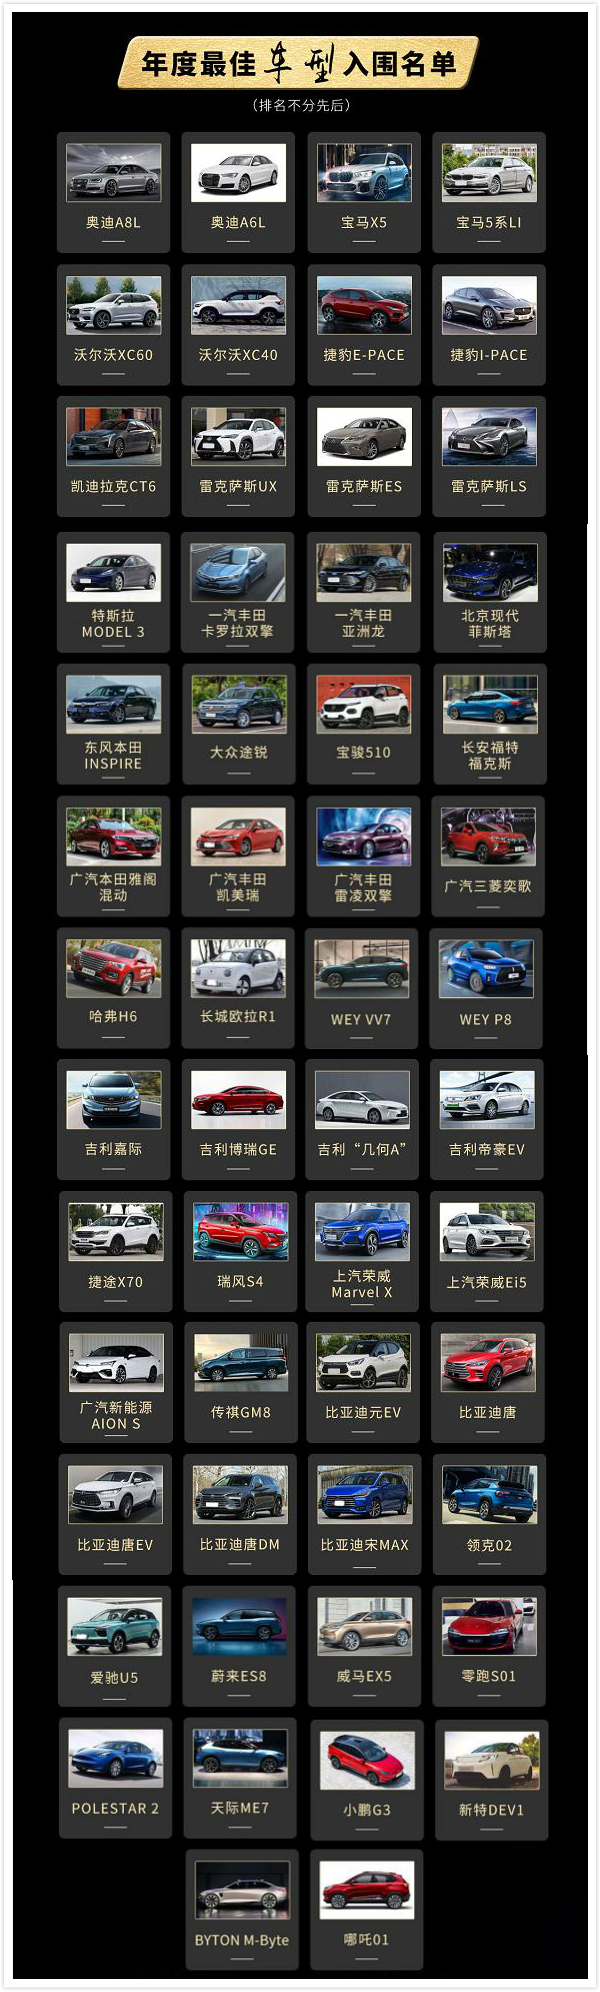 【金辑奖入围名单】年度最佳车型&年度最佳车企